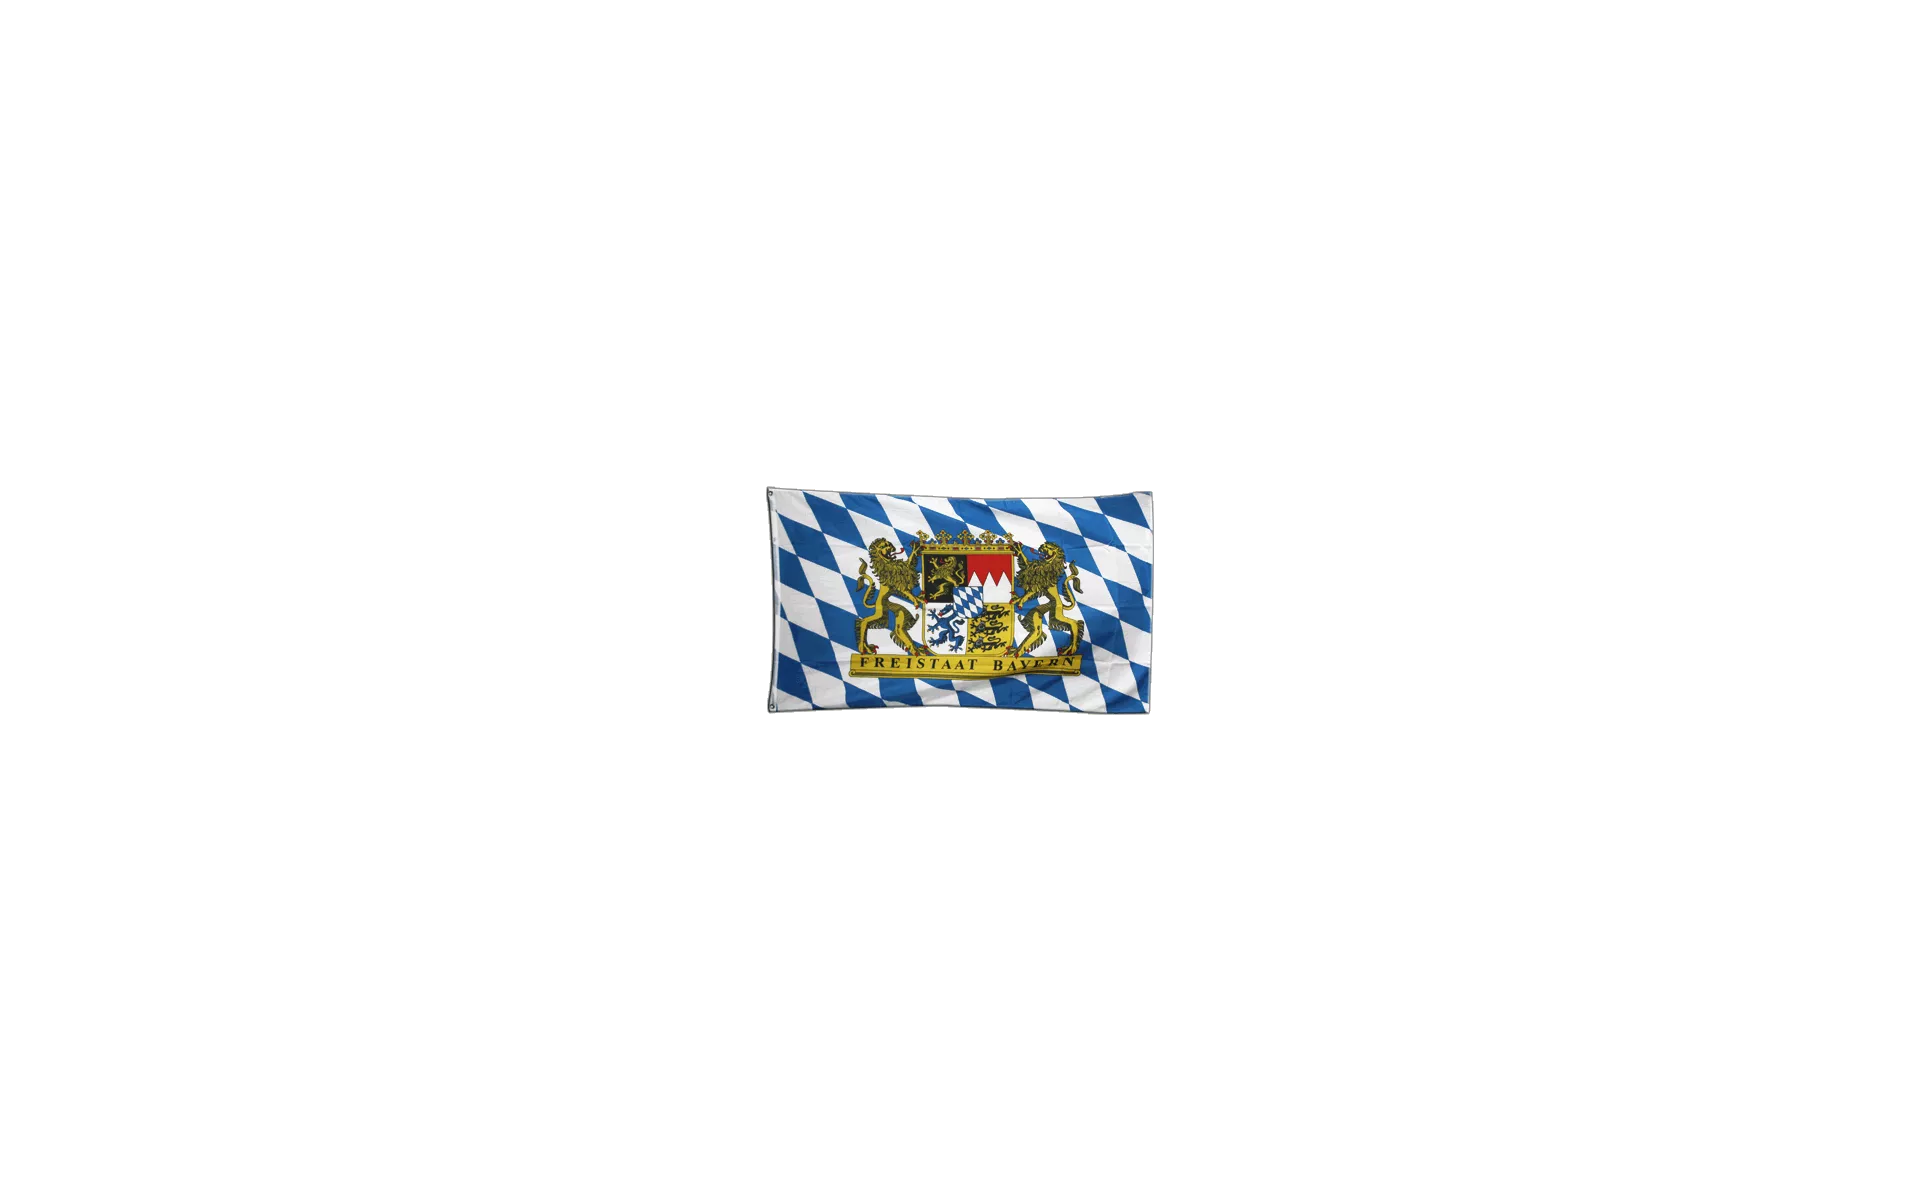 Deutschland Flagge Fahne fürs Autofenster in Bayern - Feucht